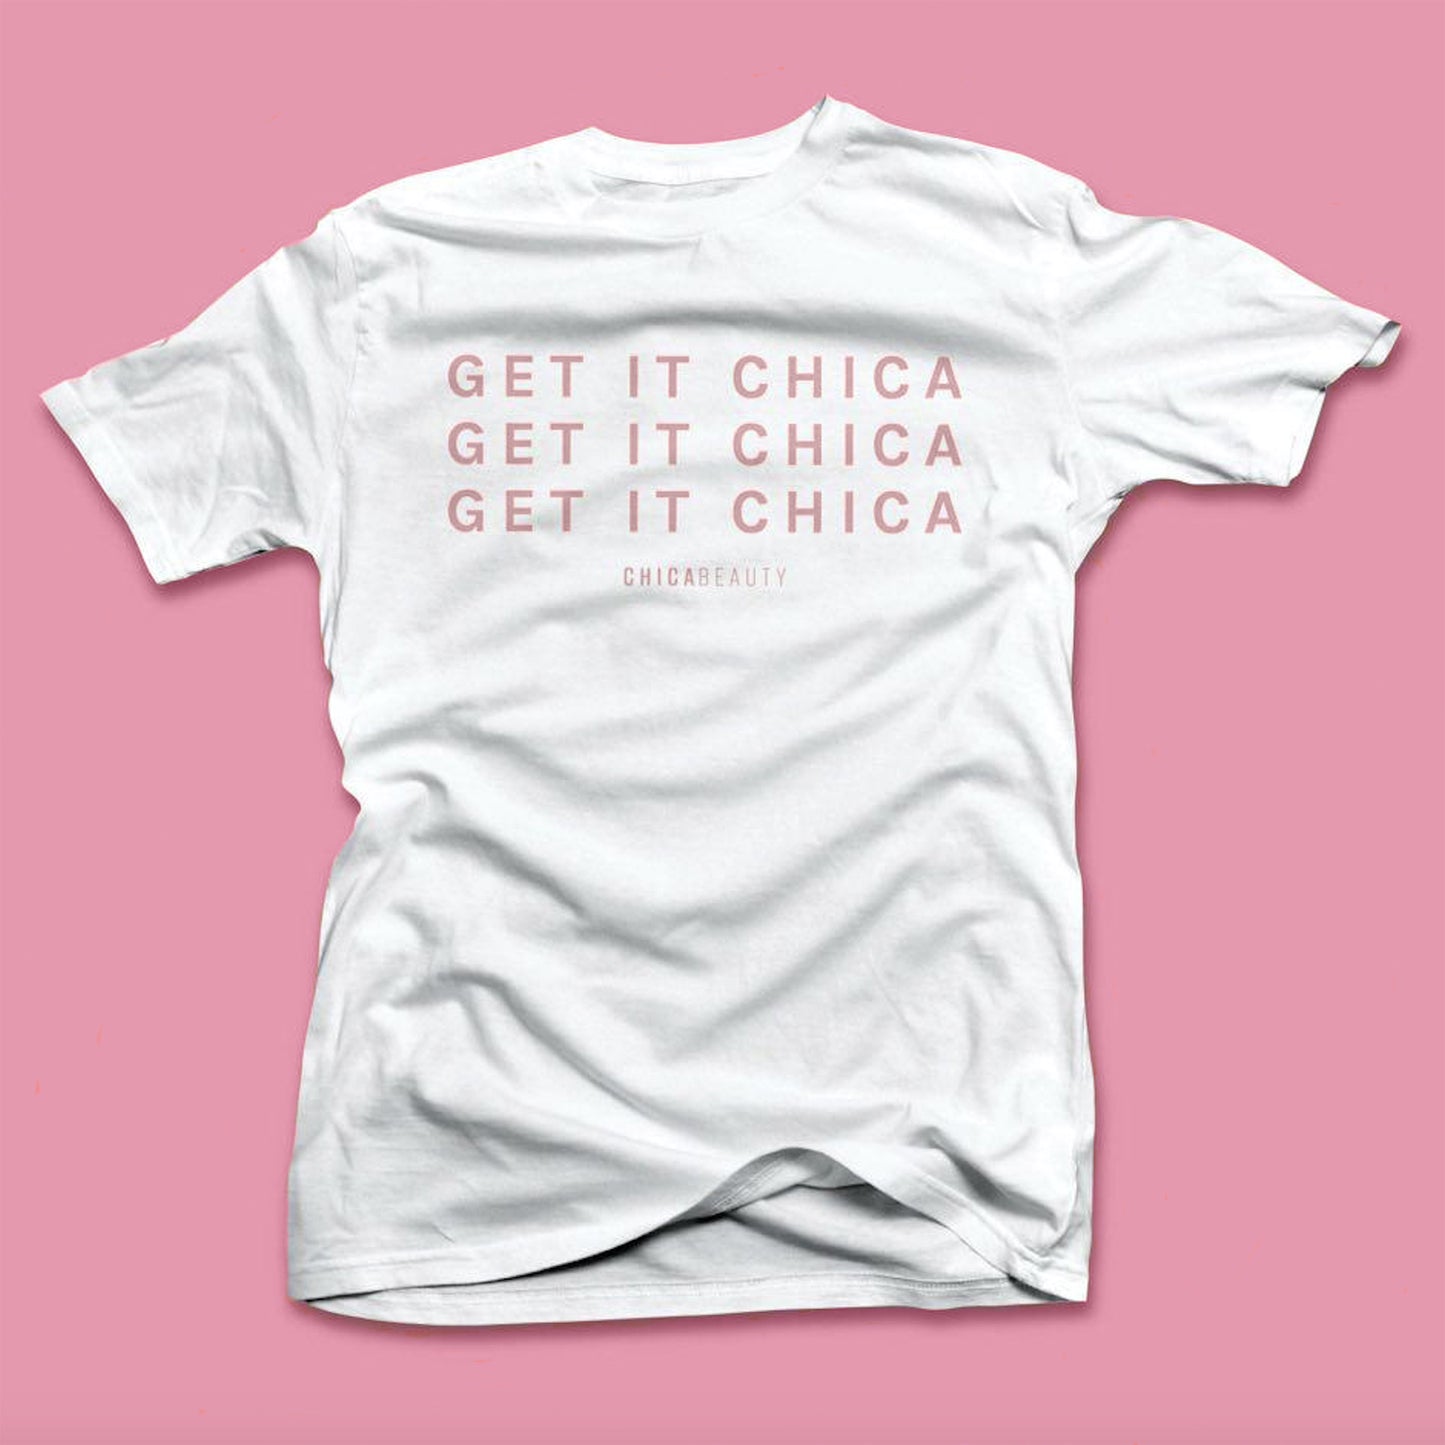 Get it Chica Shirt